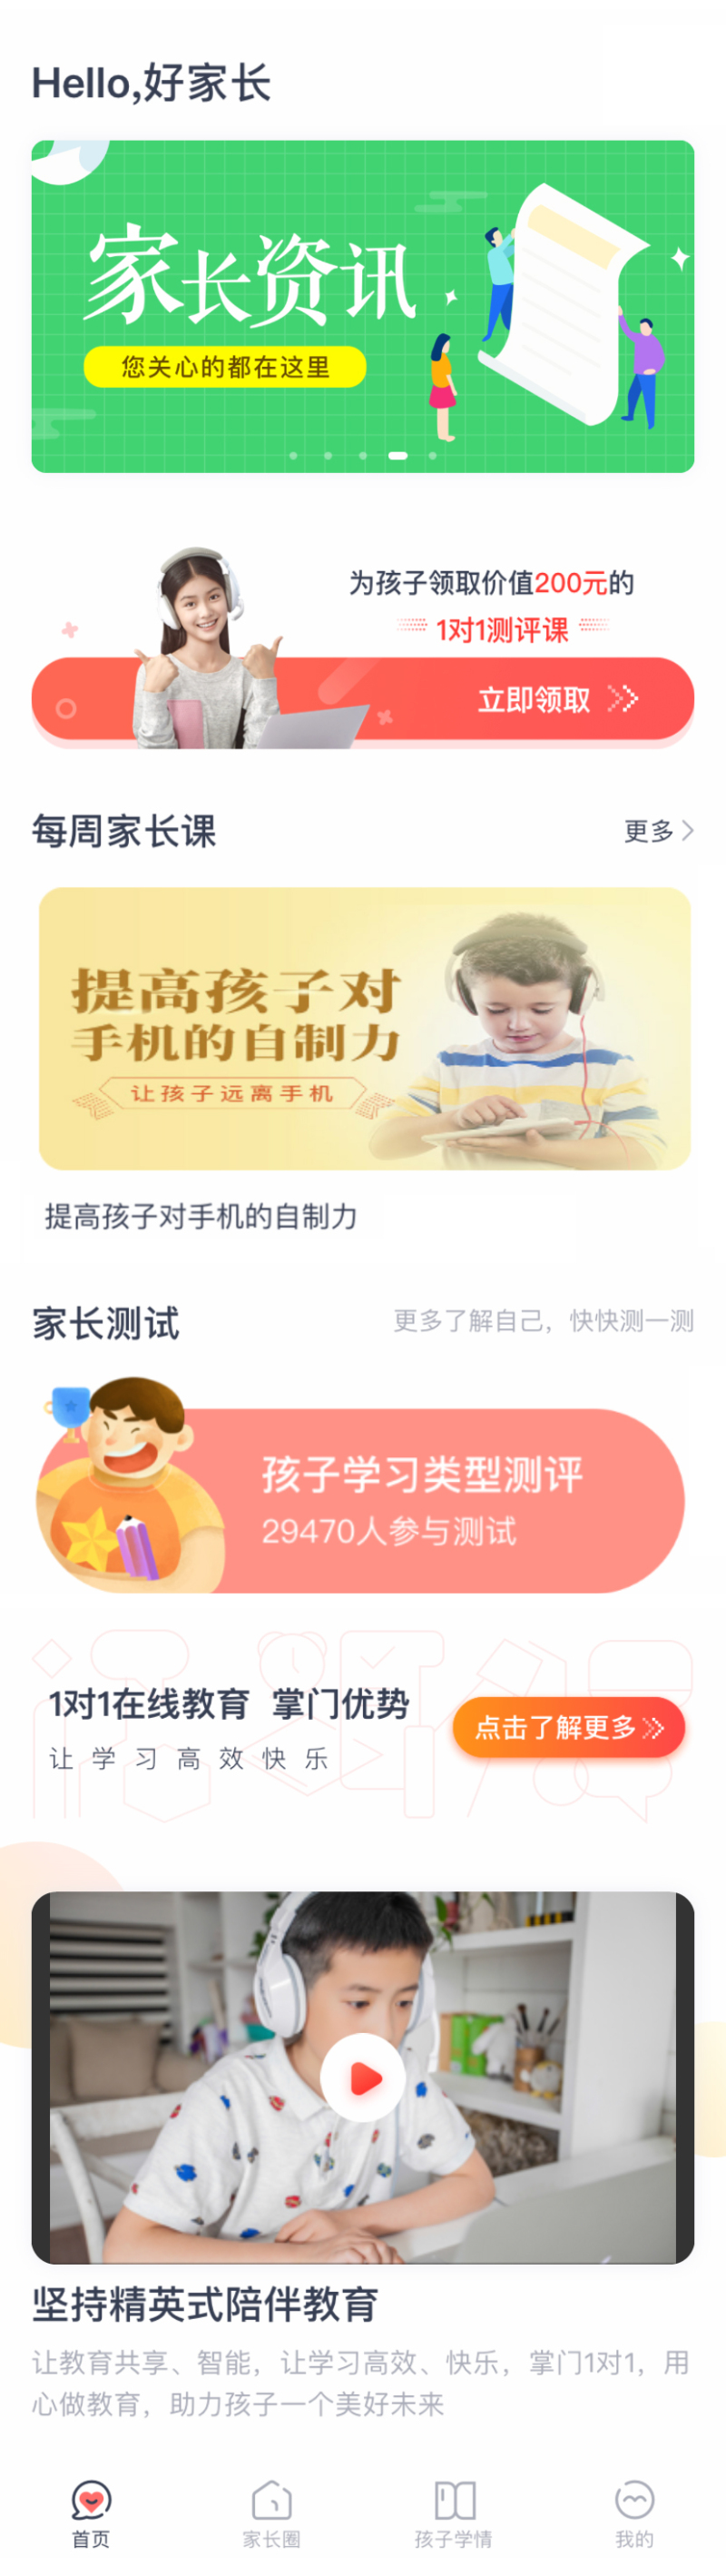 手机app儿童课程首页模板  html5网站源码下载 DIV+CSS代码下载